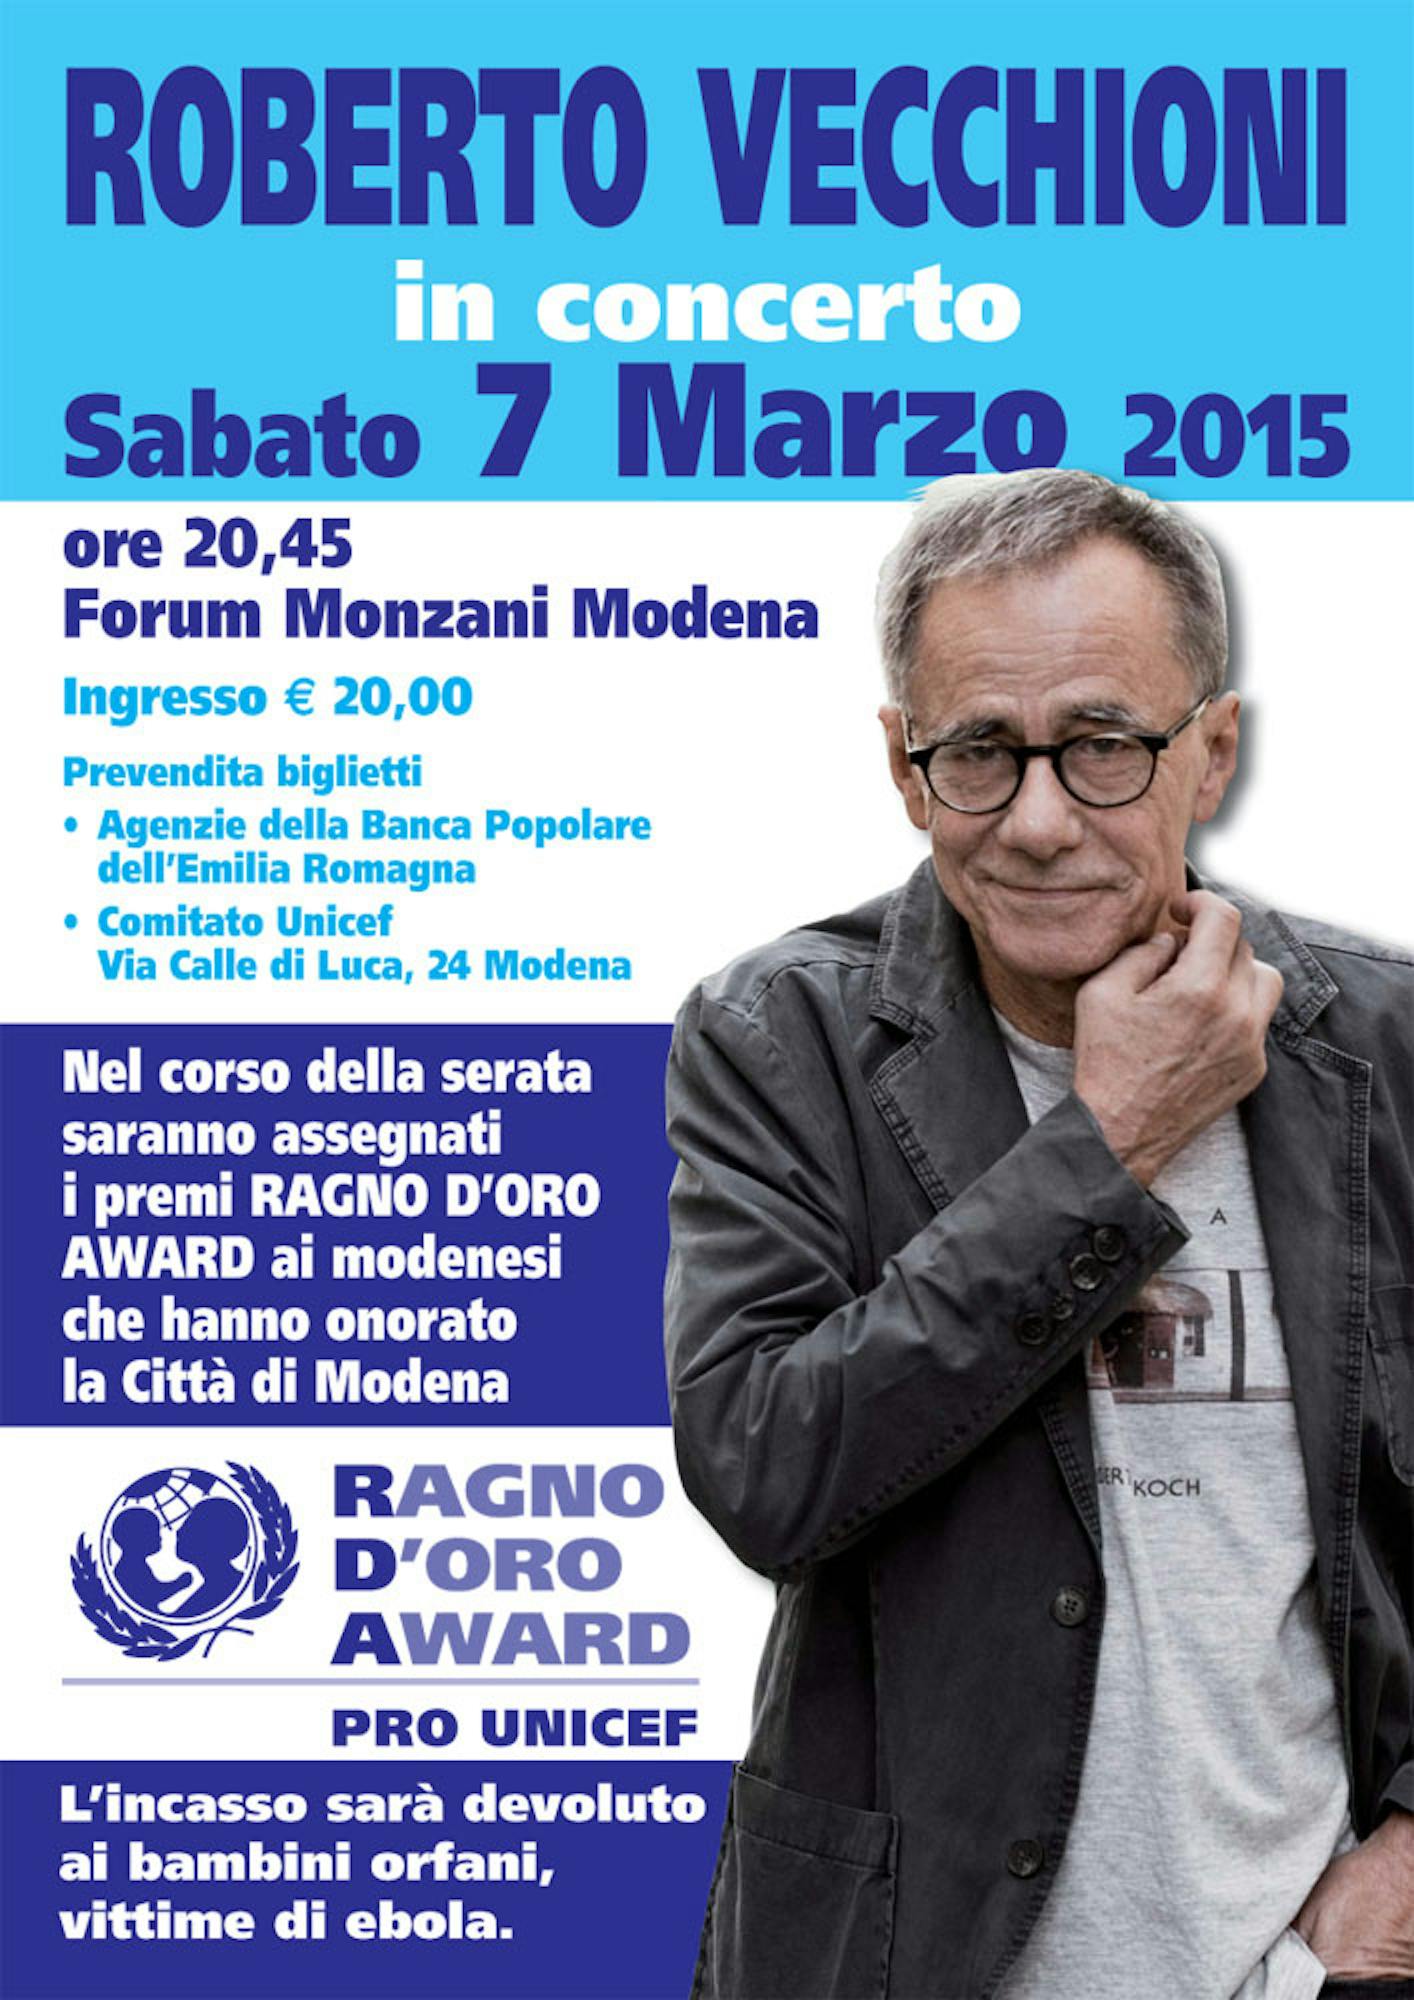 Roberto Vecchioni in concerto per UNICEF